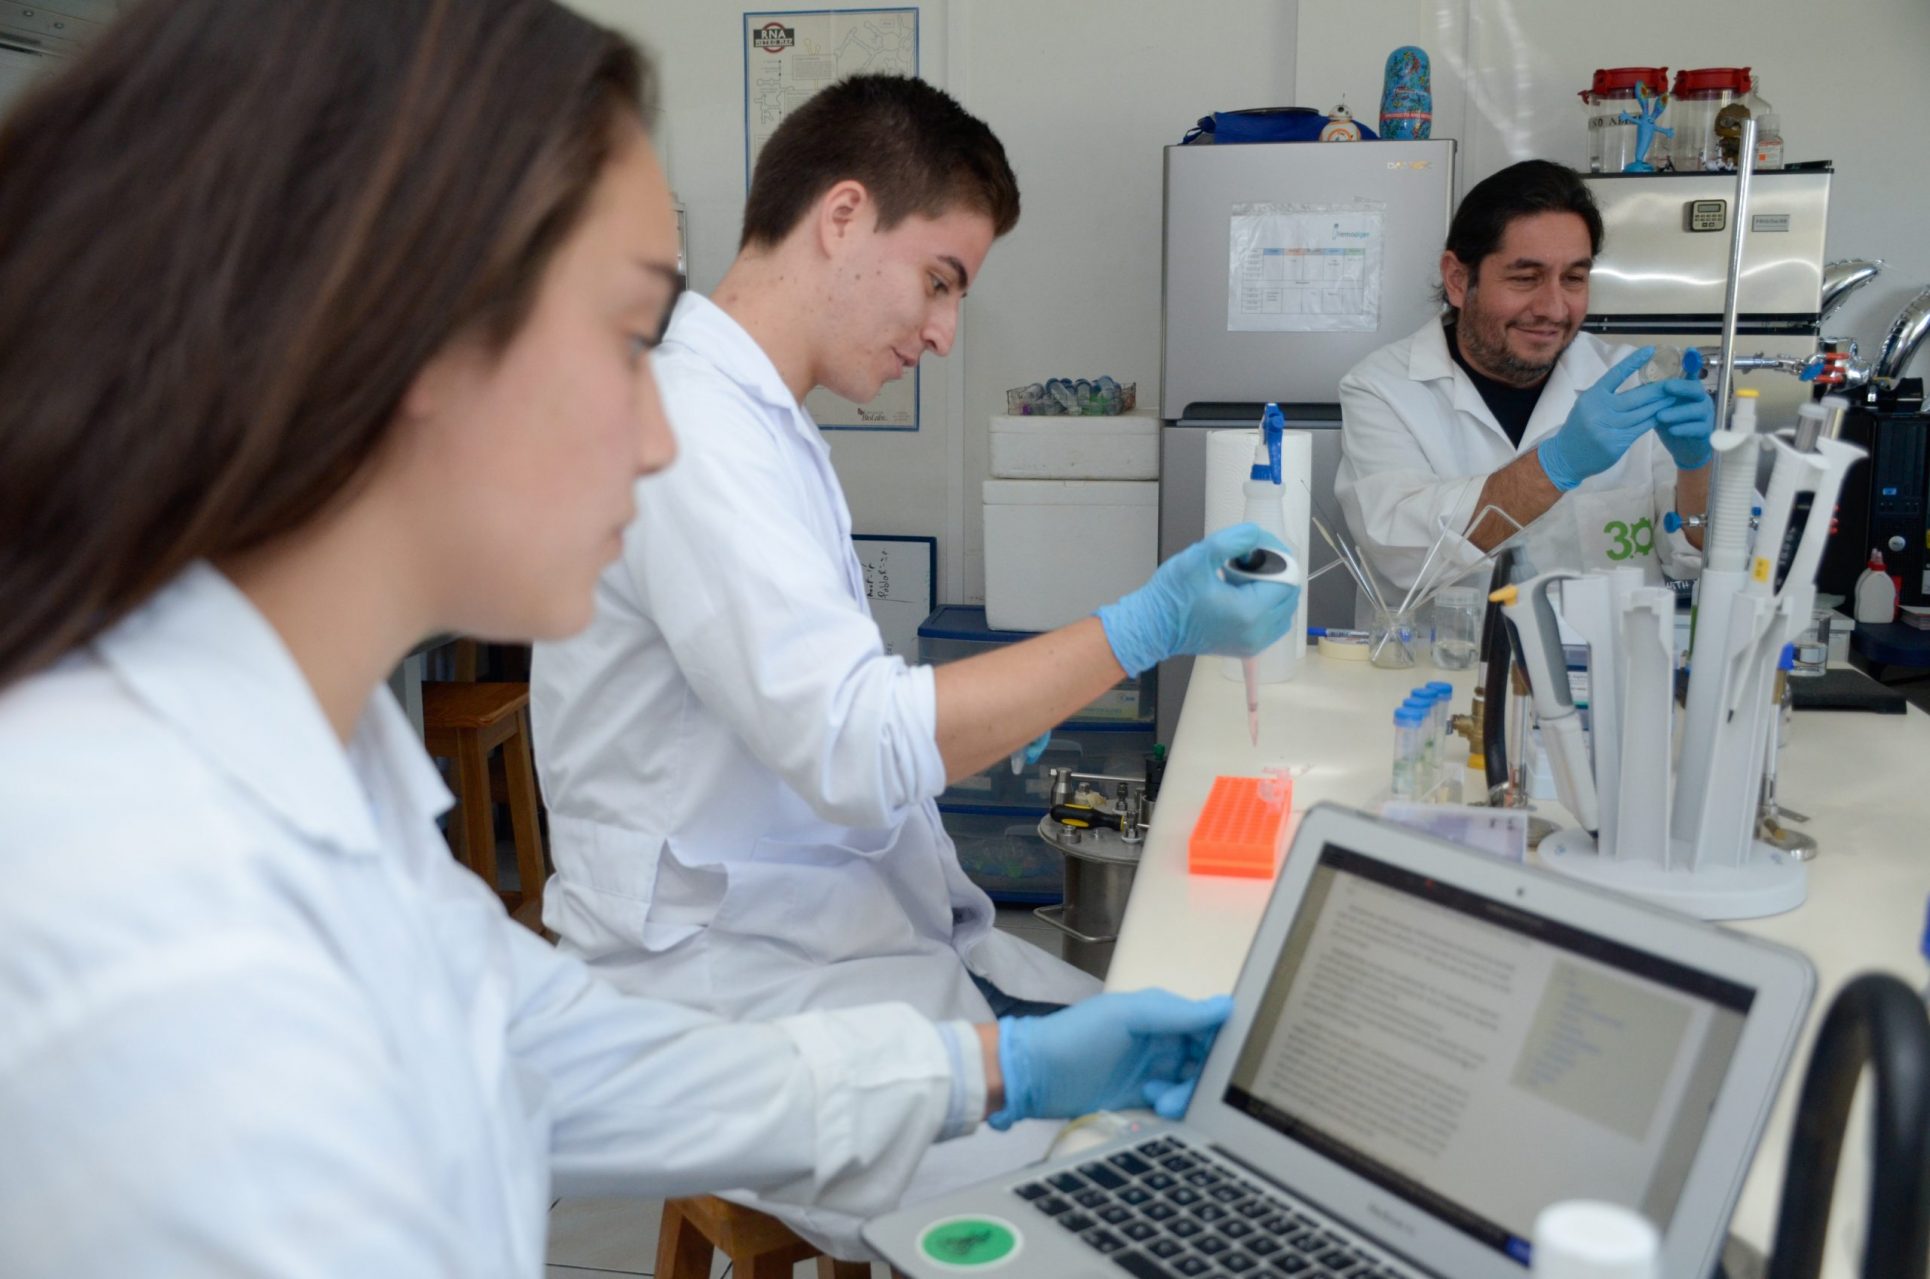 Convenio entre TEC y farmacéutica Roche busca impulsar la innovación biomédica y el talento tico